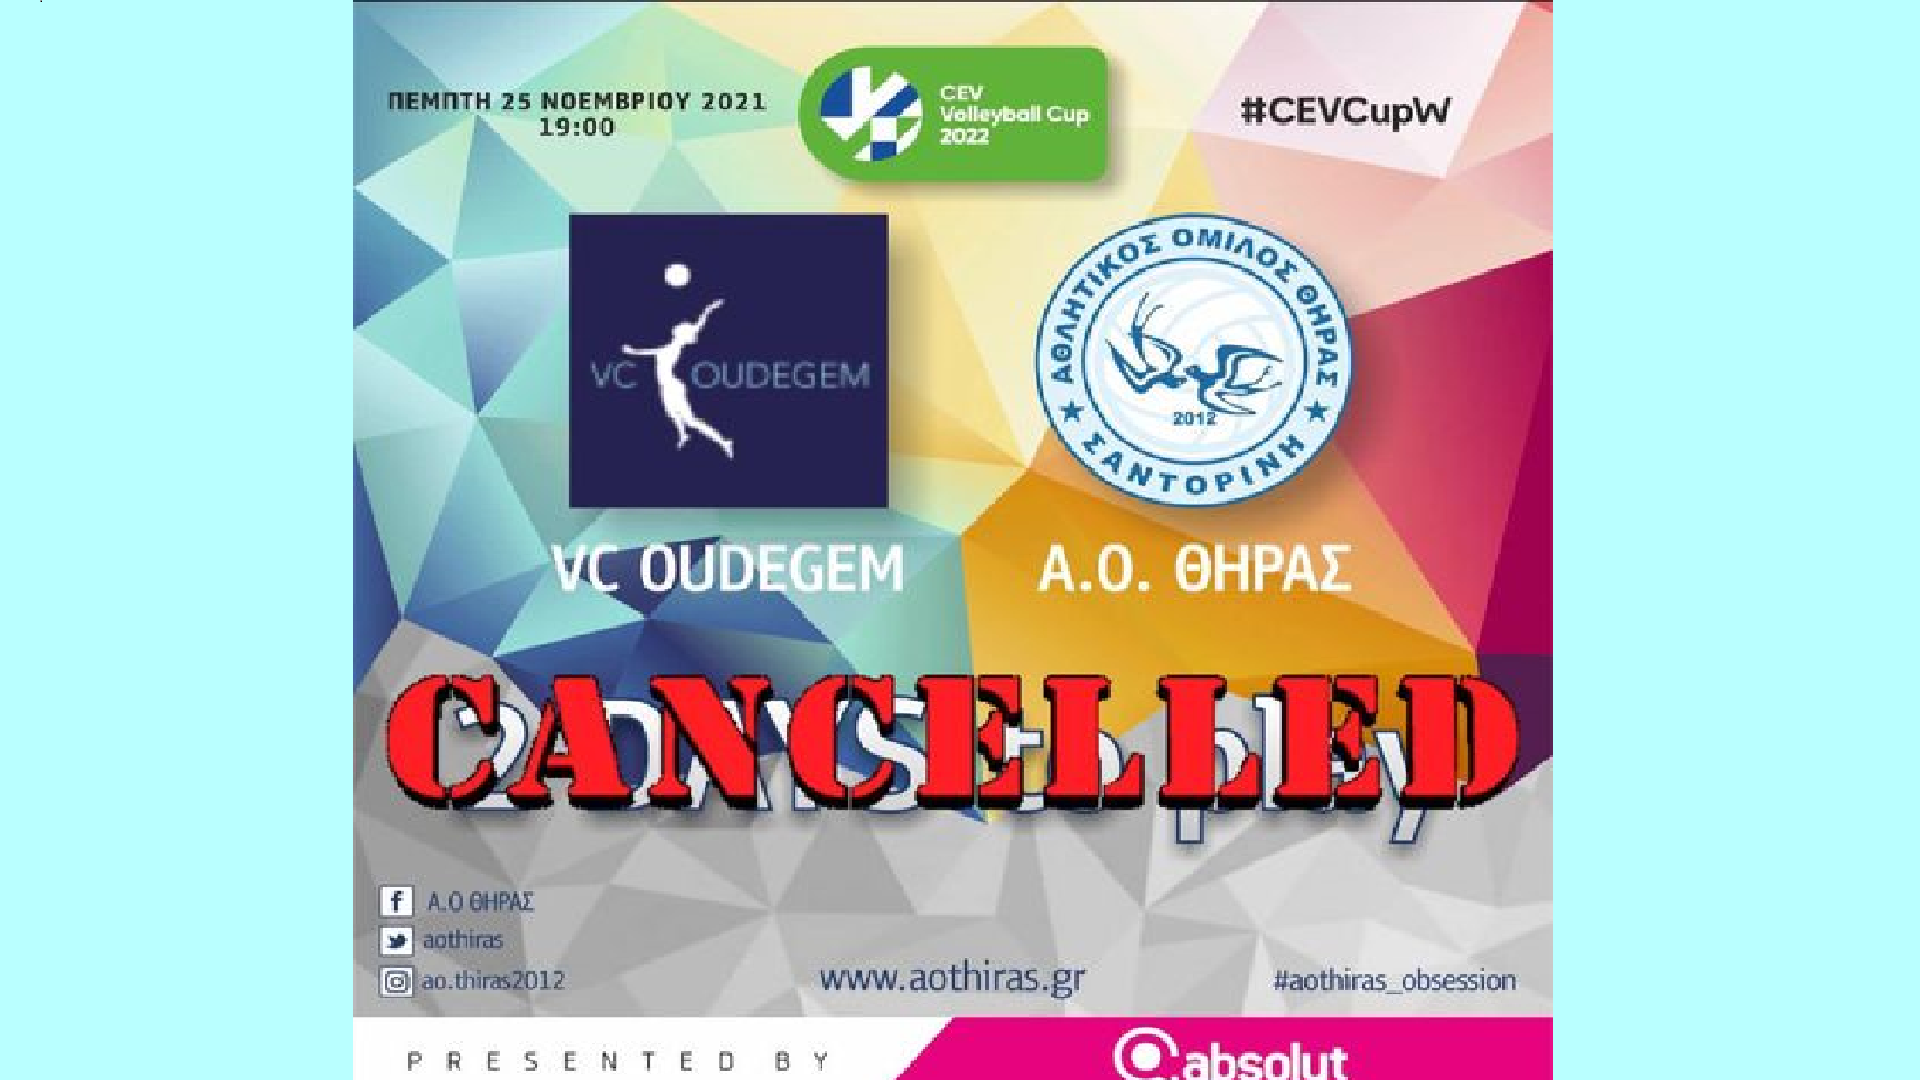 Α.Ο. Θήρας: Δεν θα πραγματοποιηθεί το παιχνίδι με την VC Oudegem την Πέμπτη 25 Νοεμβρίου λόγω κρούσματος Covid-19 στην  ομάδα